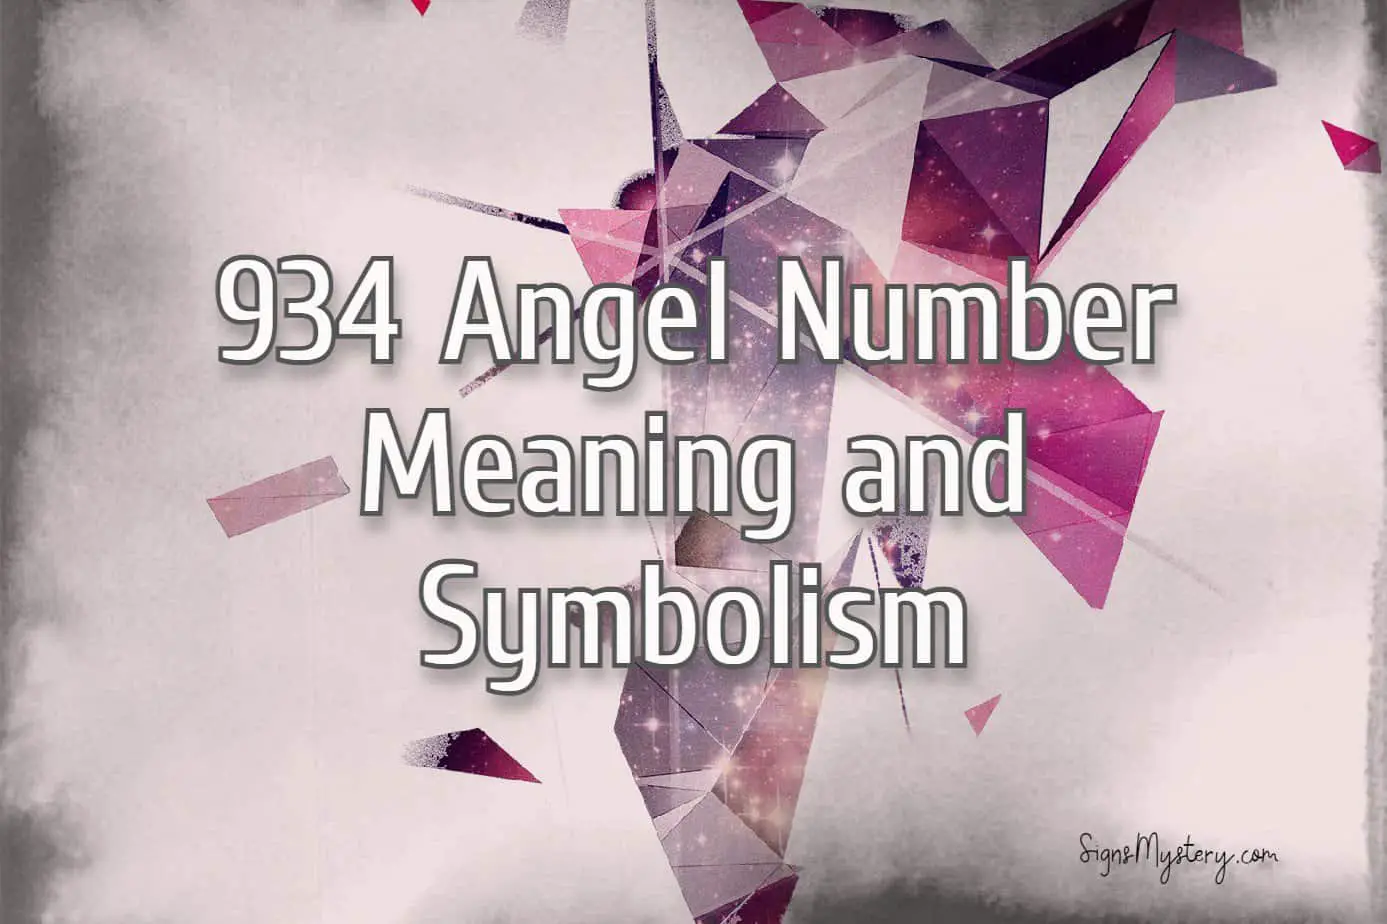 934 angel number